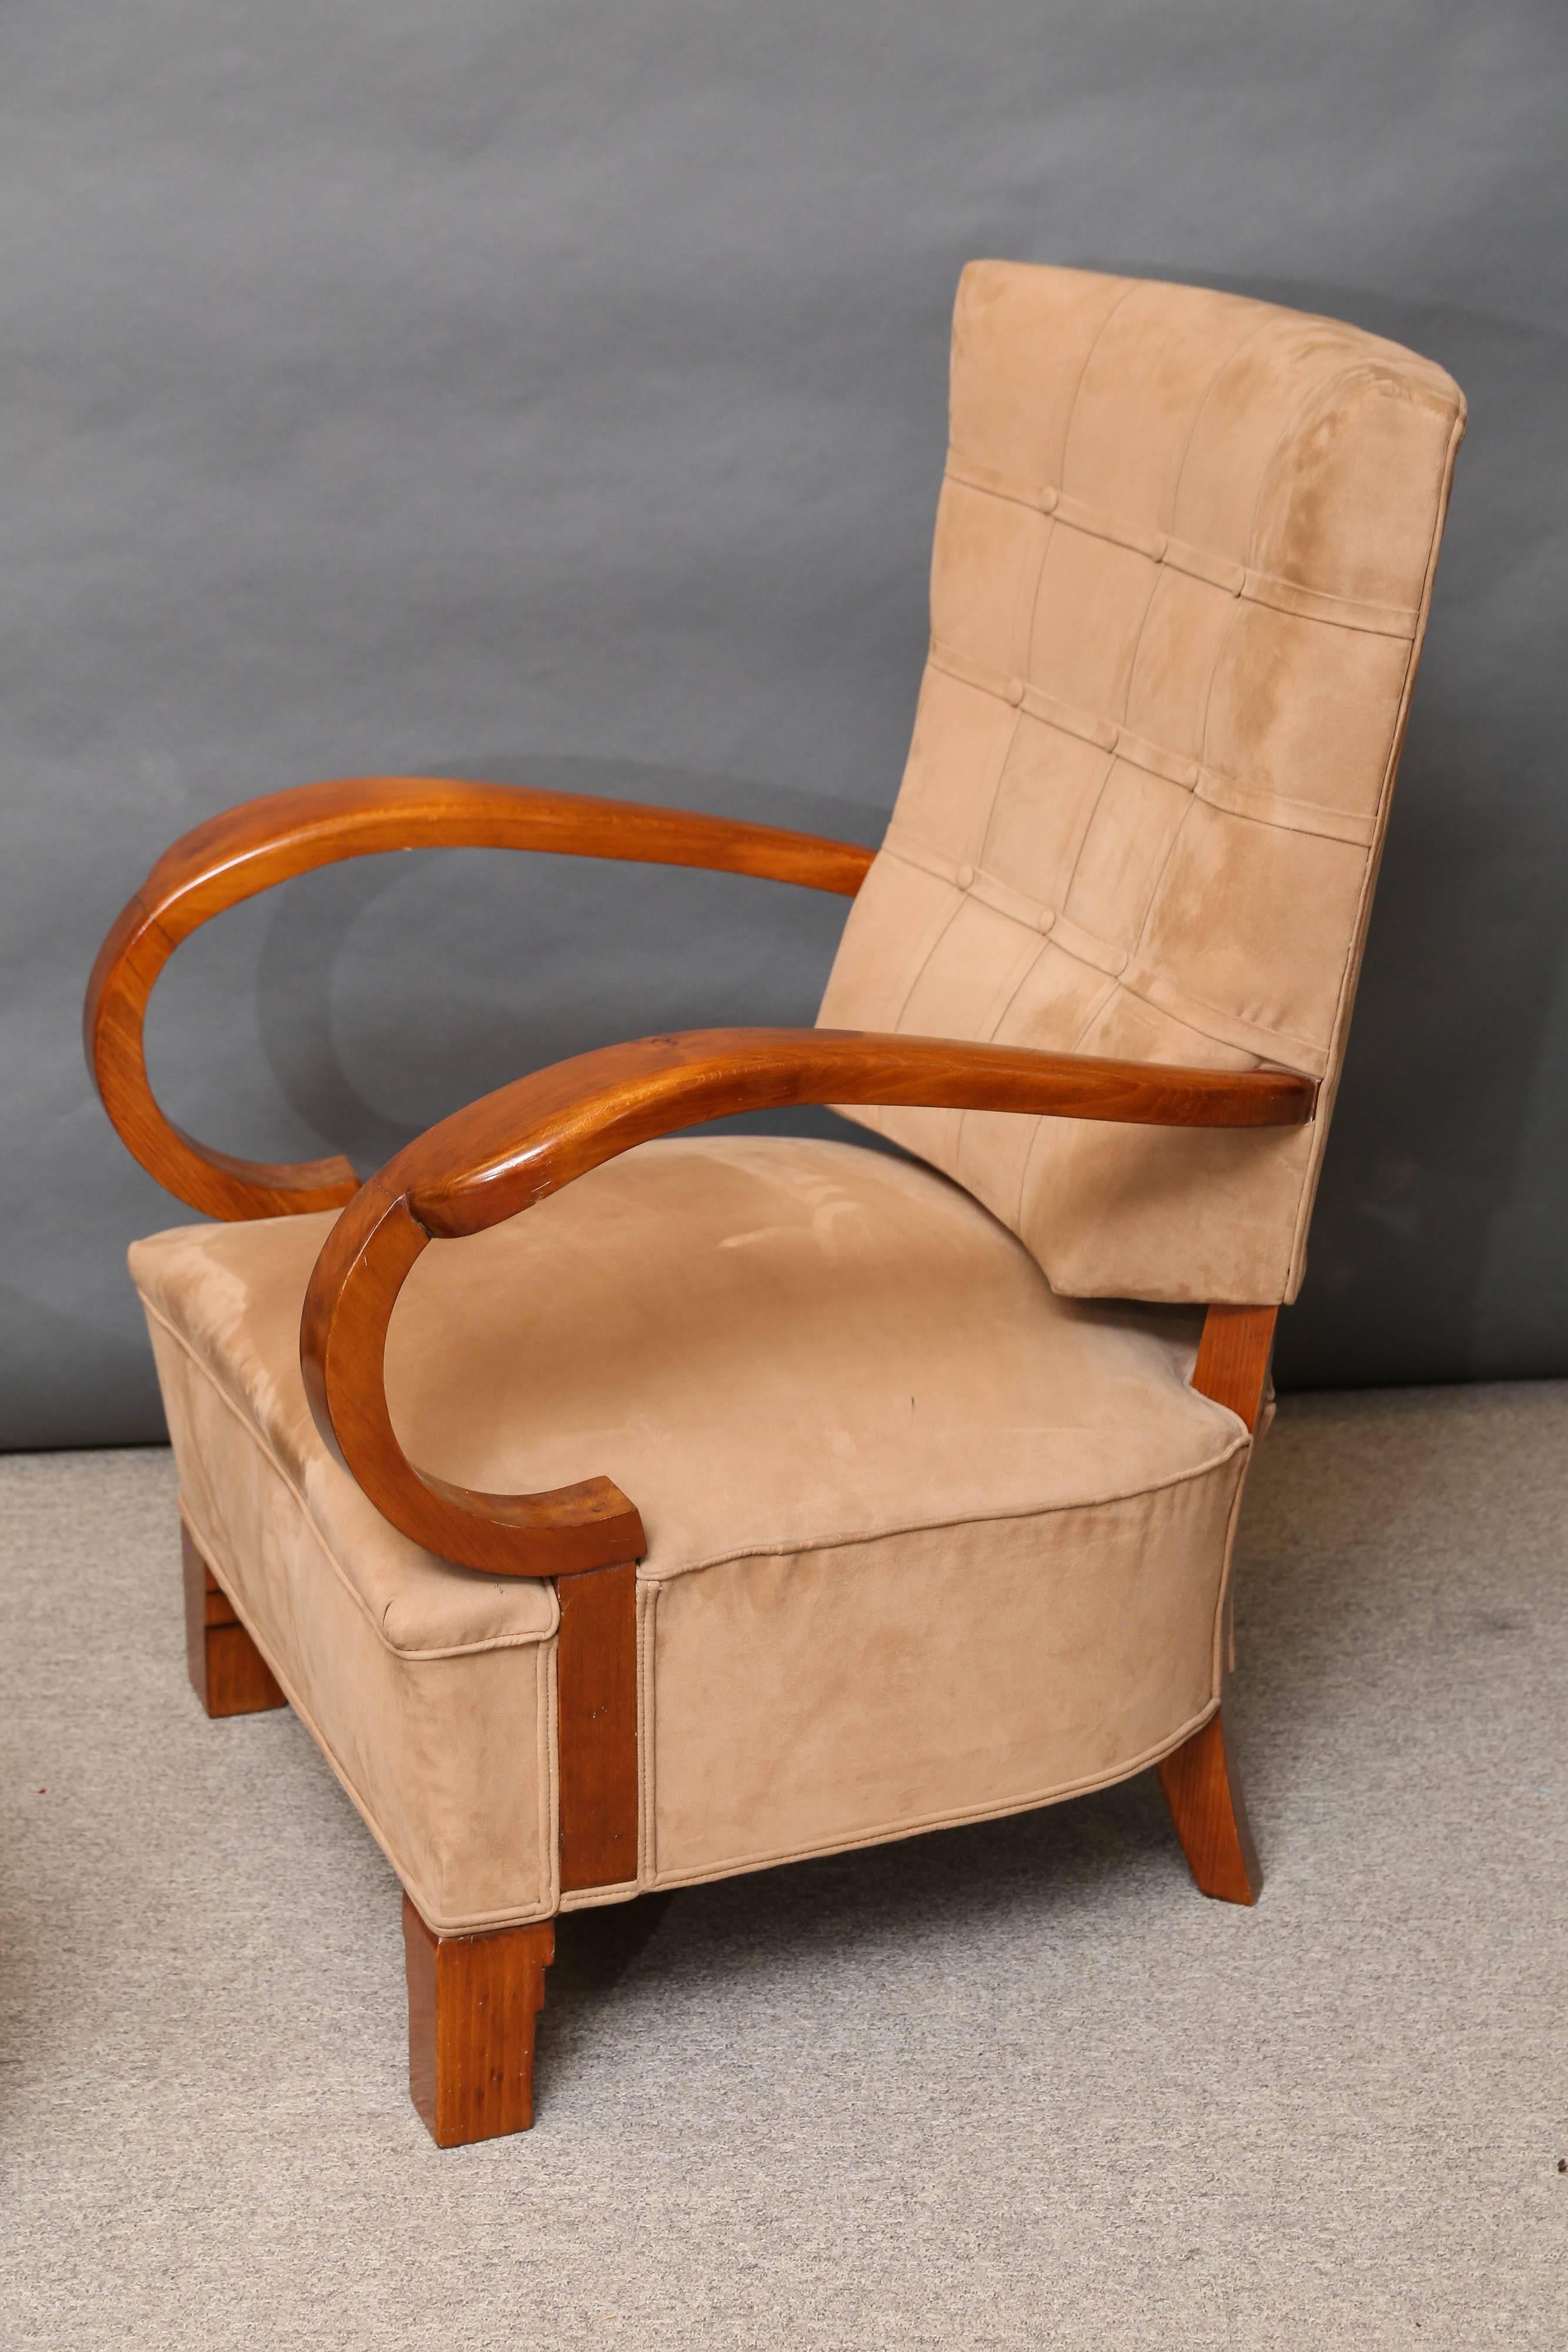 Cette chaise très confortable et large est nouvellement retapissée dans un tissu velouté de couleur sable.
Le corps de la chaise est fabriqué en bois de noyer et recouvert de vernis français. La chaise est surélevée par quatre courts pieds carrés.